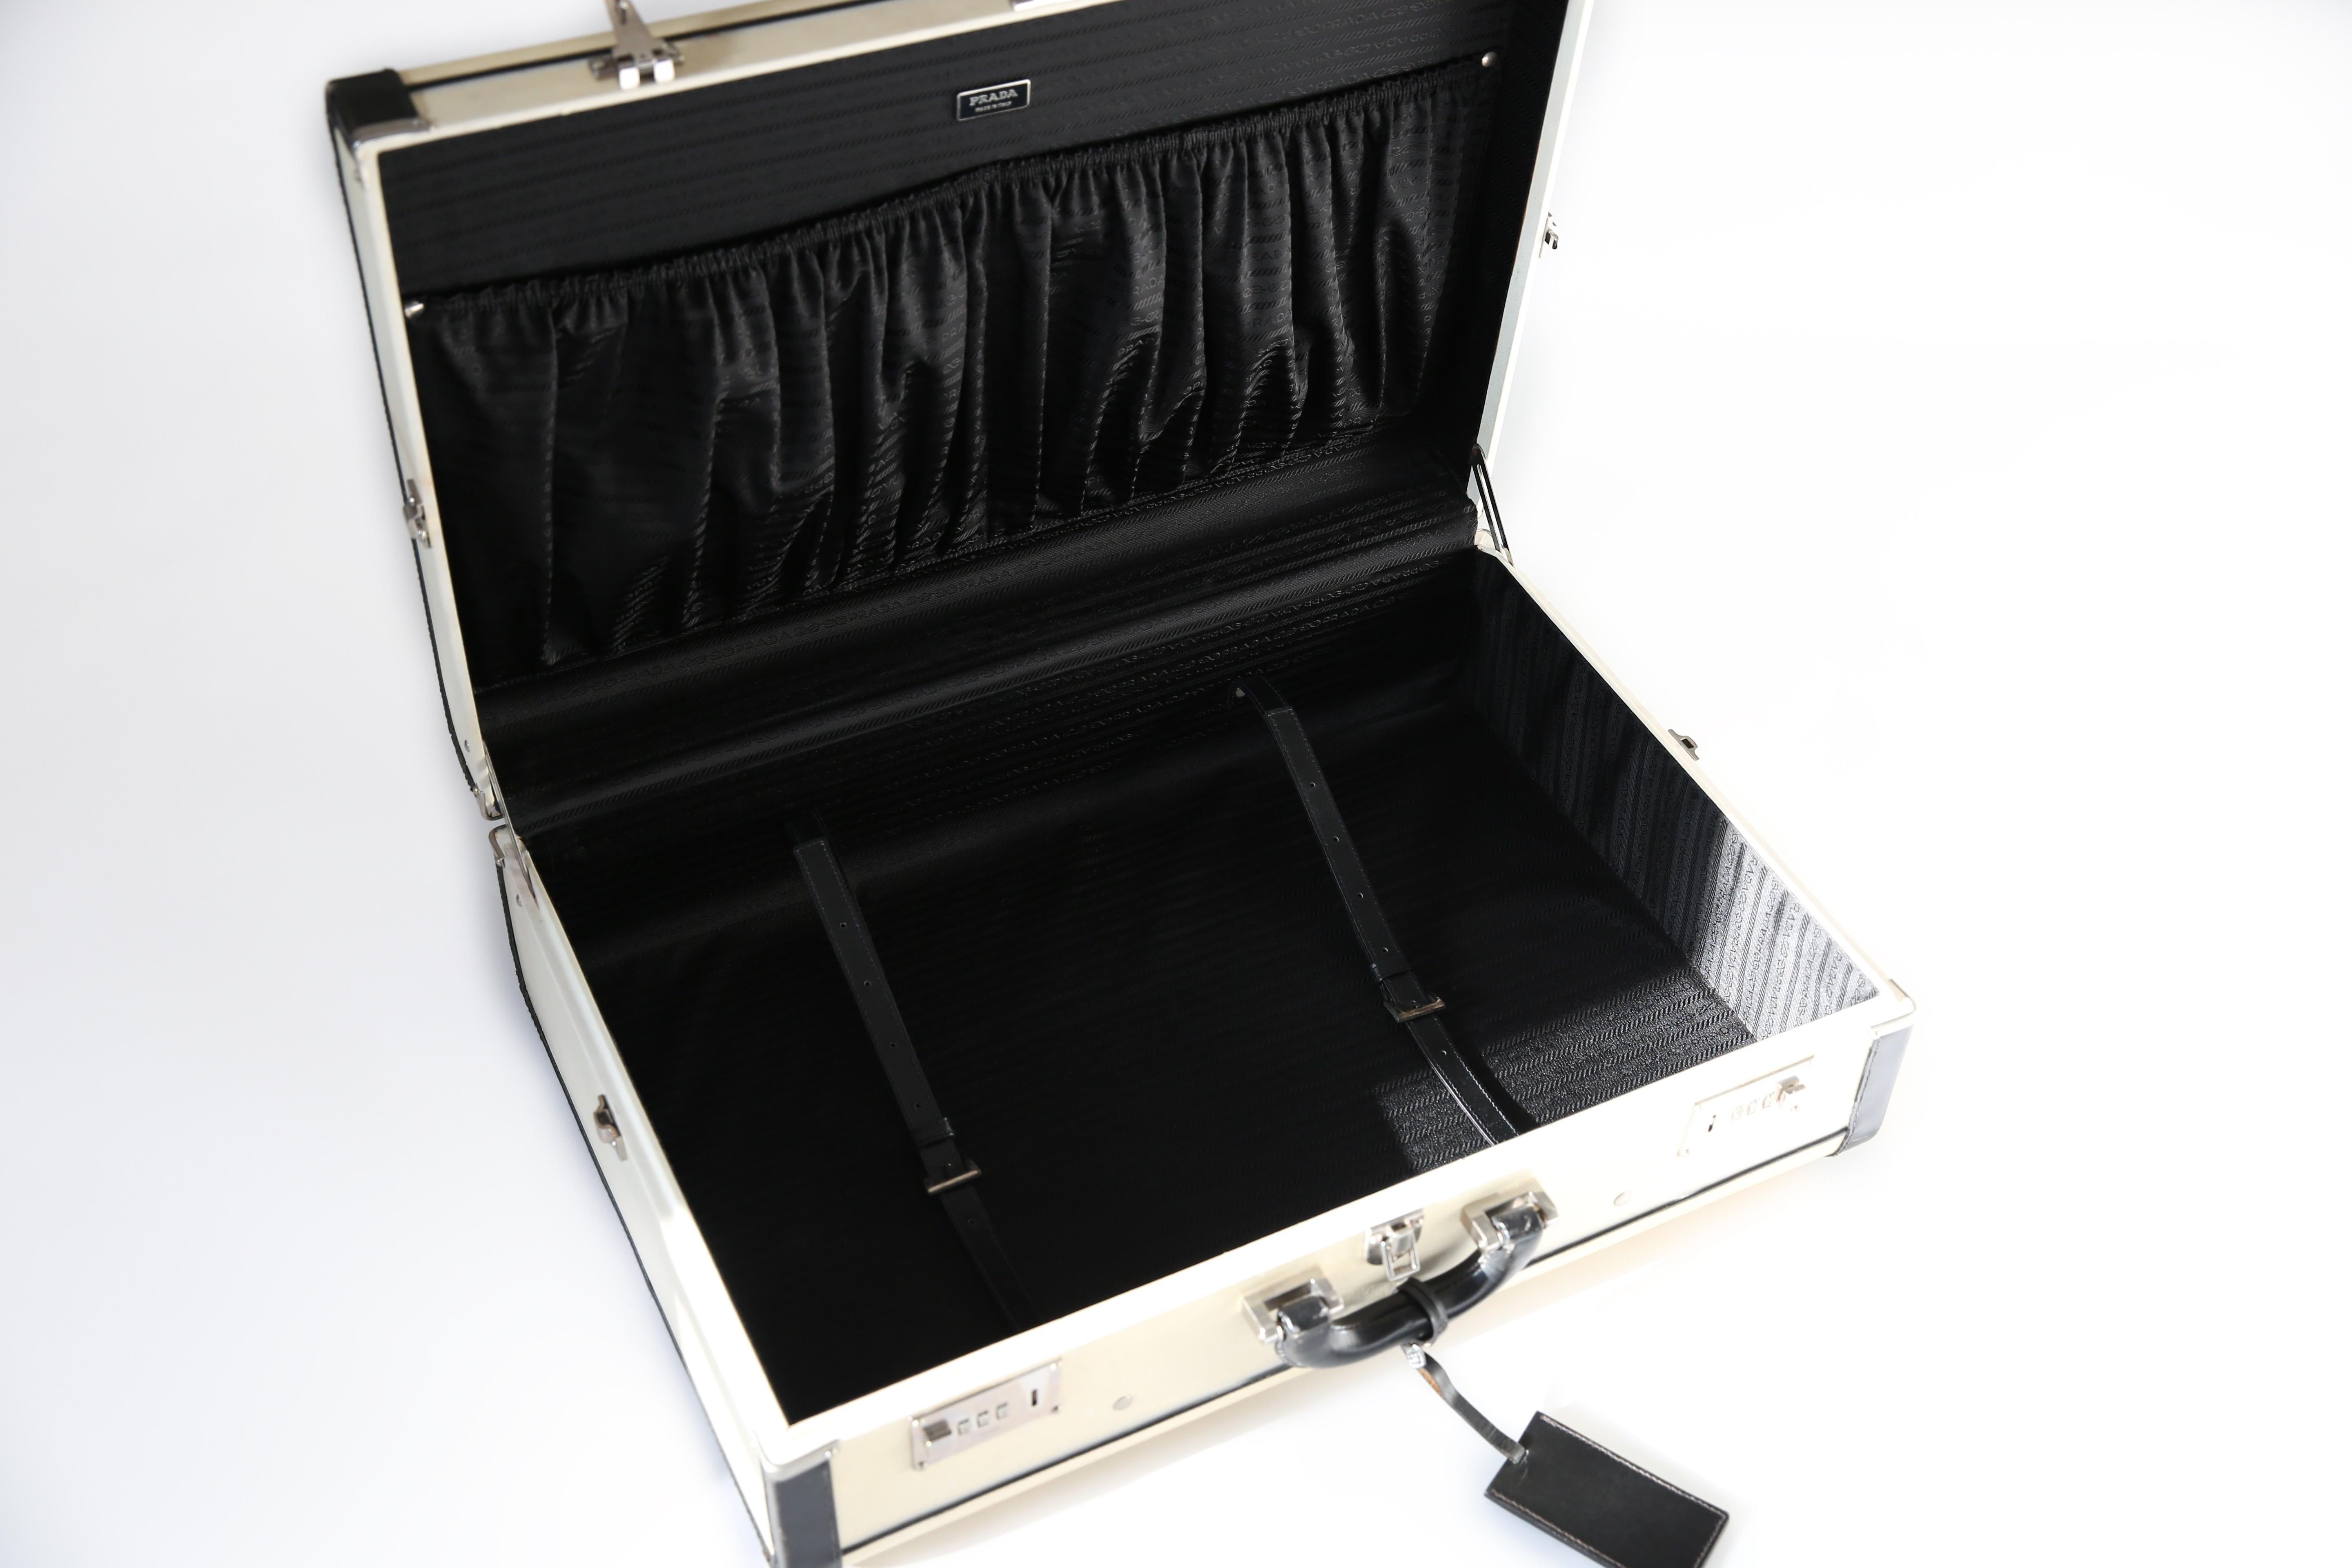 Prada Pergamena vintage style ivory black hard leather luggage bag suitcase case For Sale 4